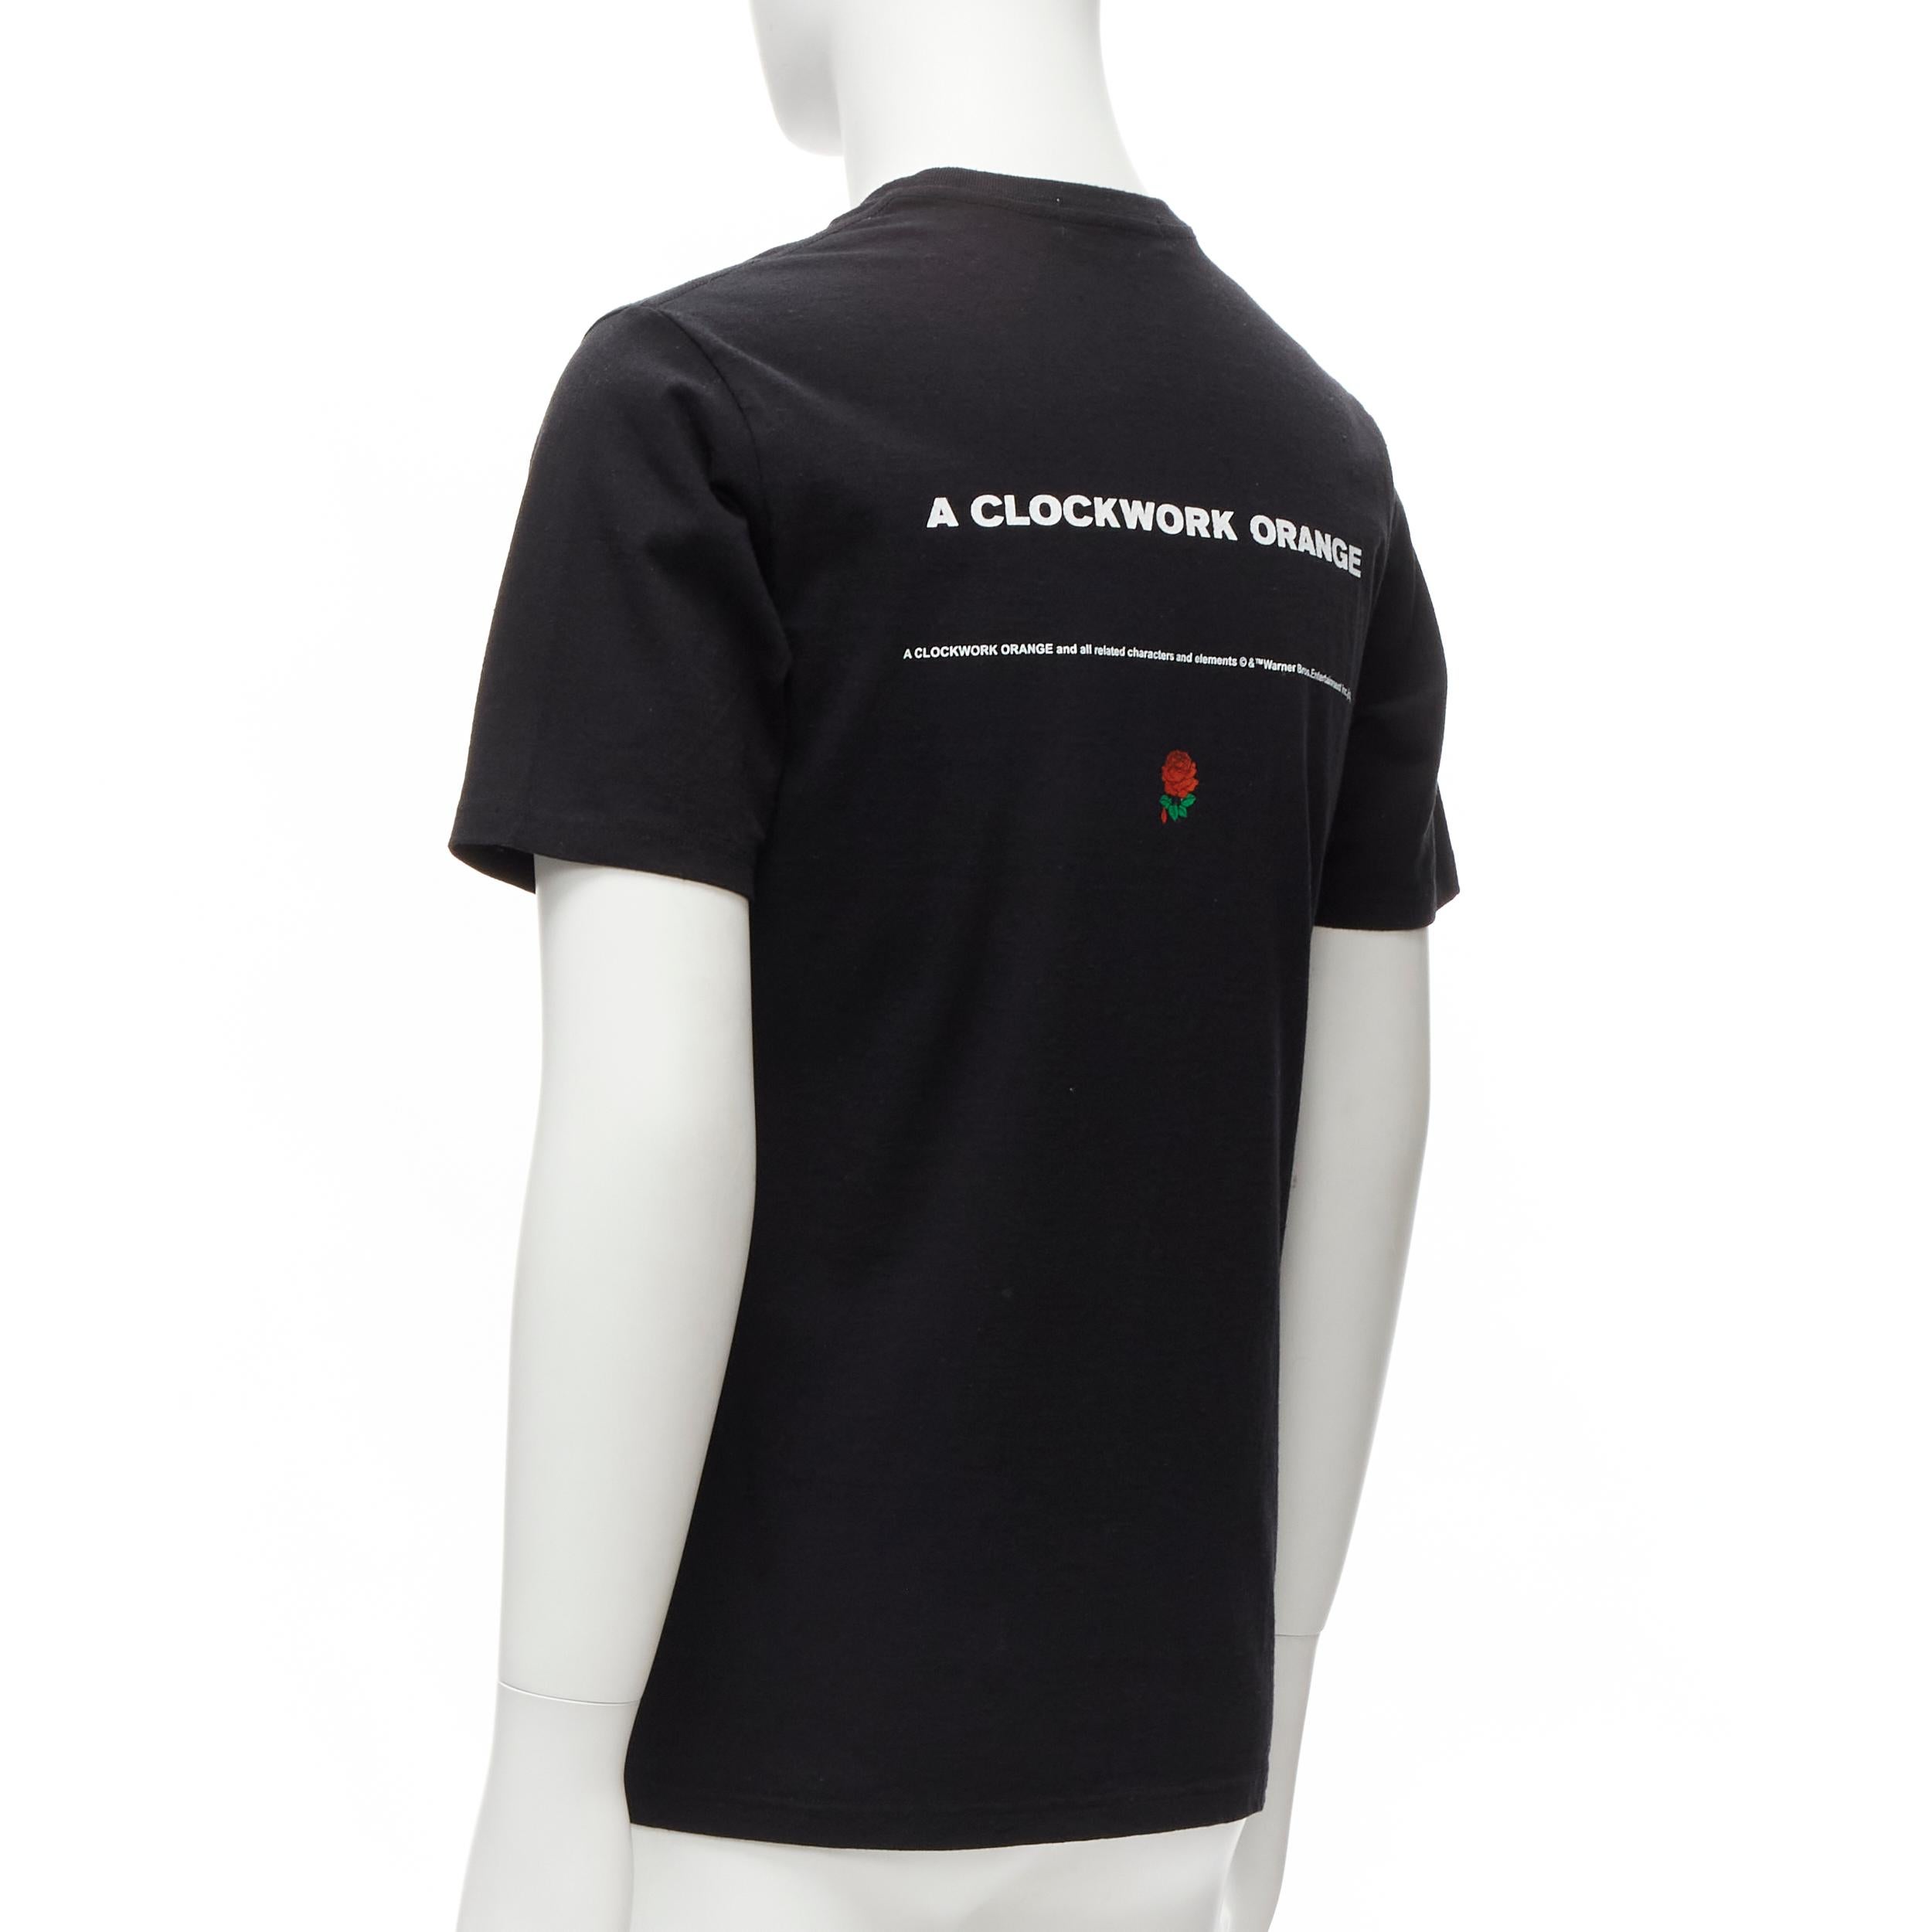 Black new UNDERCOVER 2019 Clockwork Orange black vampire rose print tshirt JP2 M For Sale